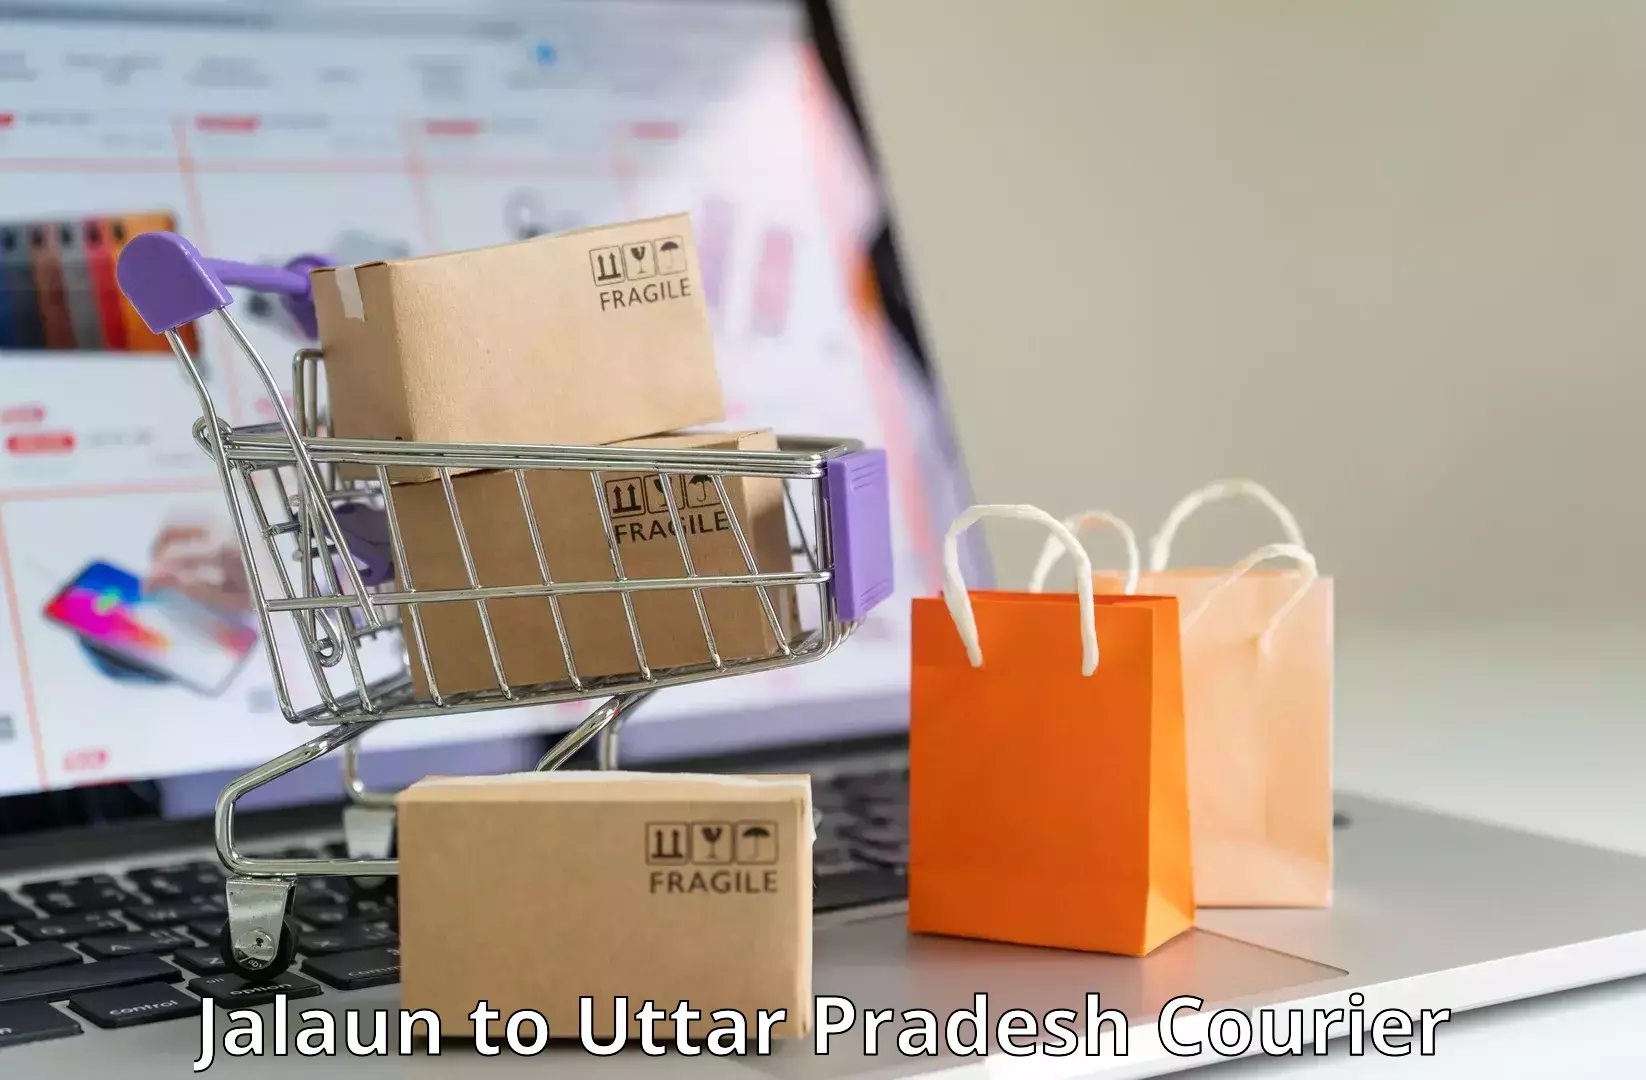 International parcel service Jalaun to Jaunpur